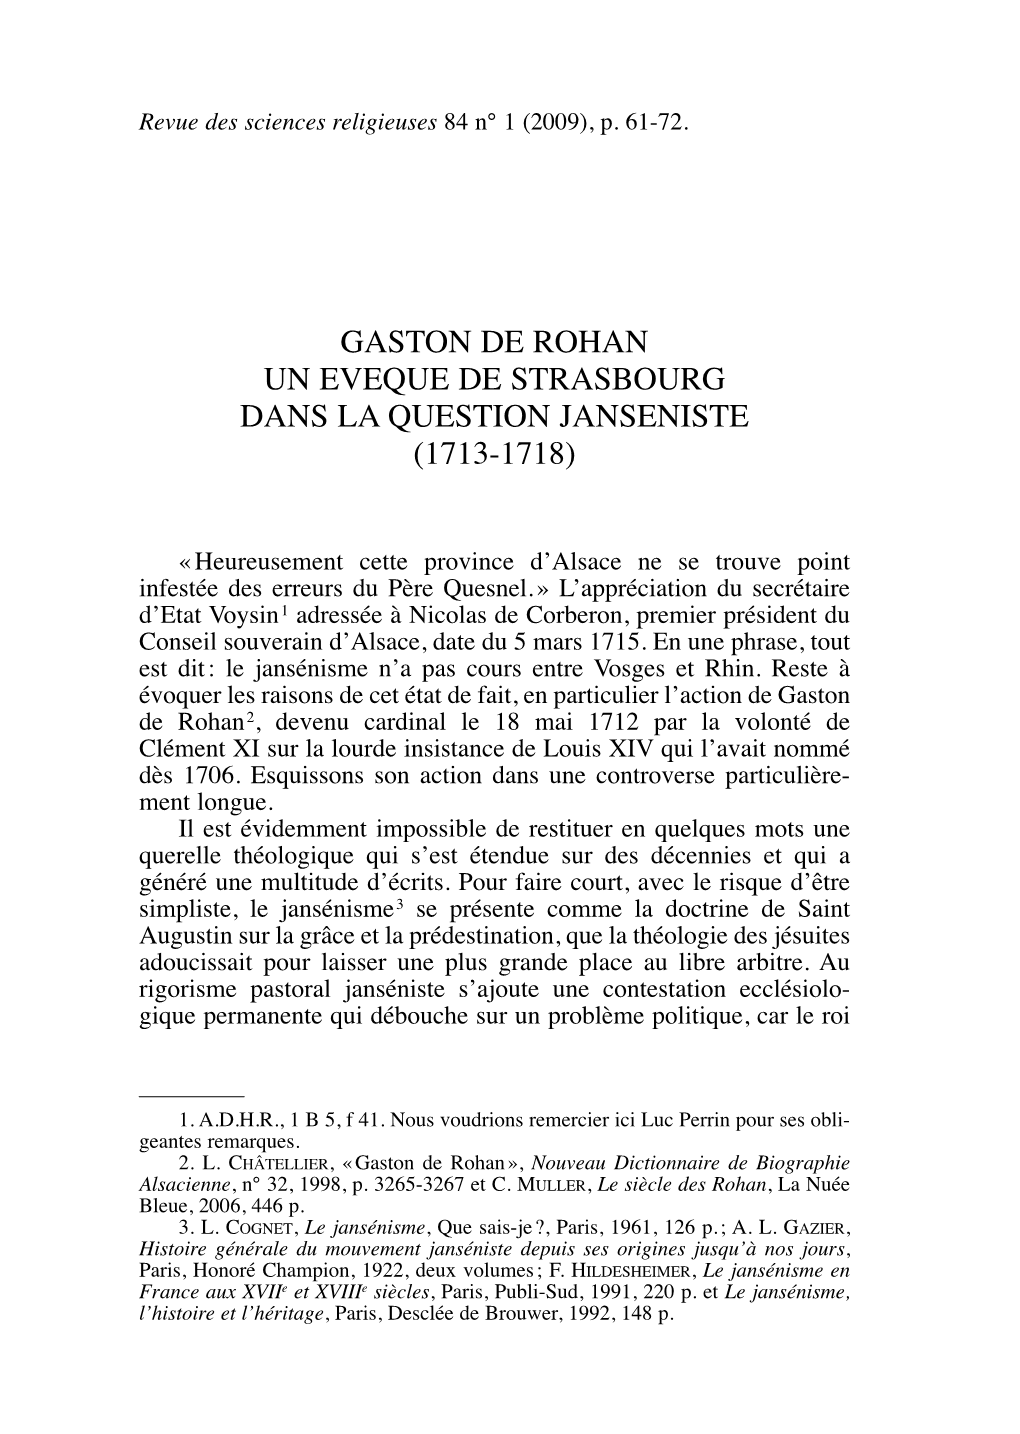 Gaston De Rohan Un Eveque De Strasbourg Dans La Question Janseniste (1713-1718)